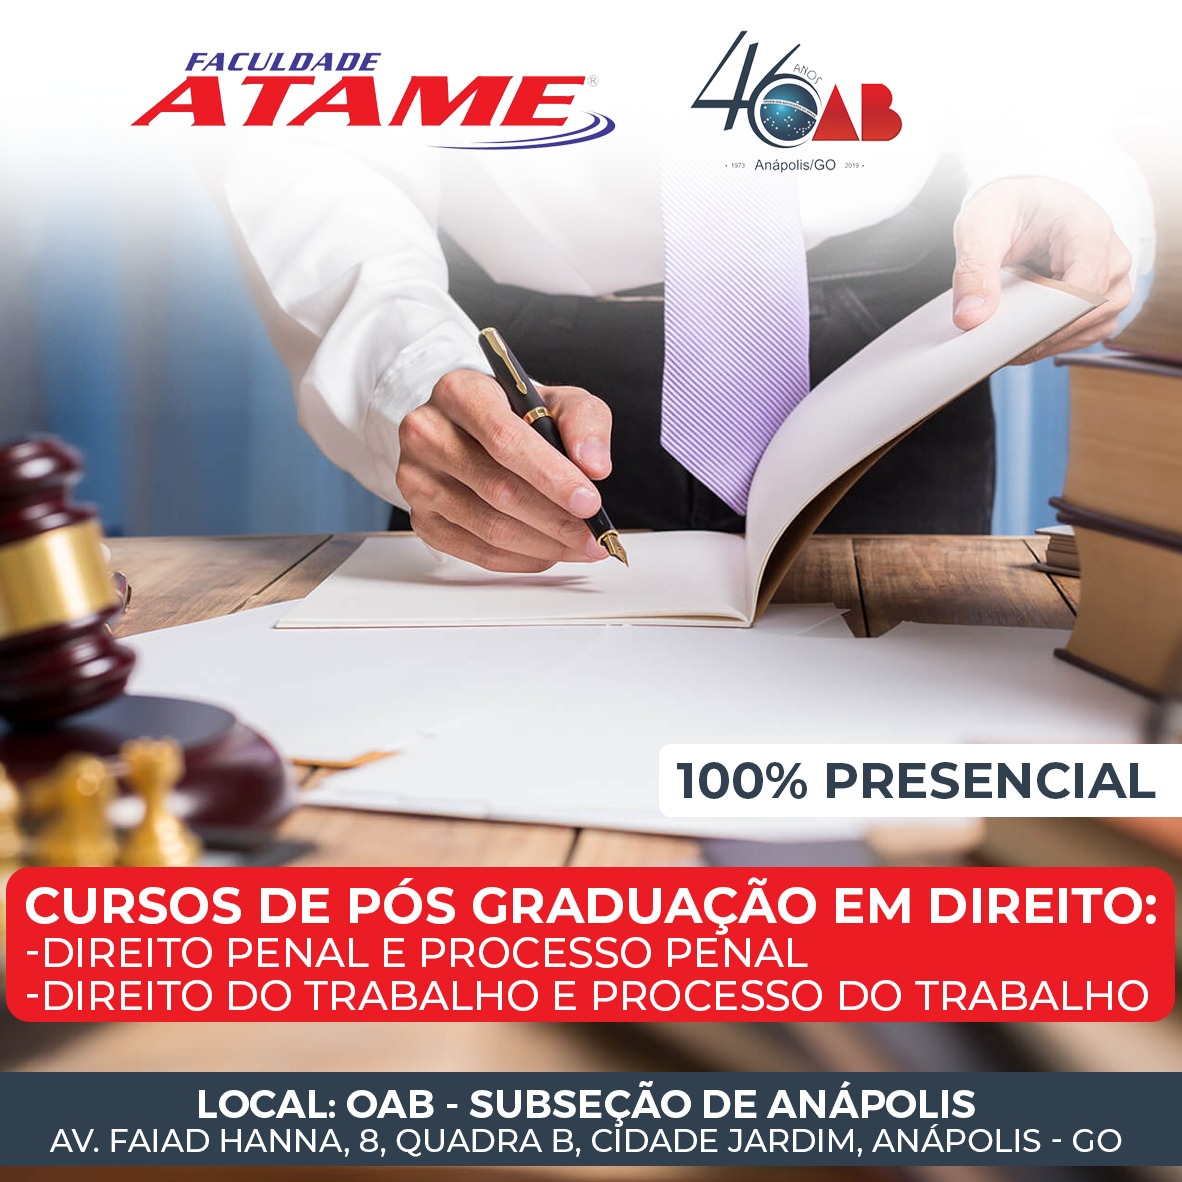 OAB Subseção Anápolis e Faculdade Atame fecham parceria para disponibilizar cursos de pós graduação em Anápolis